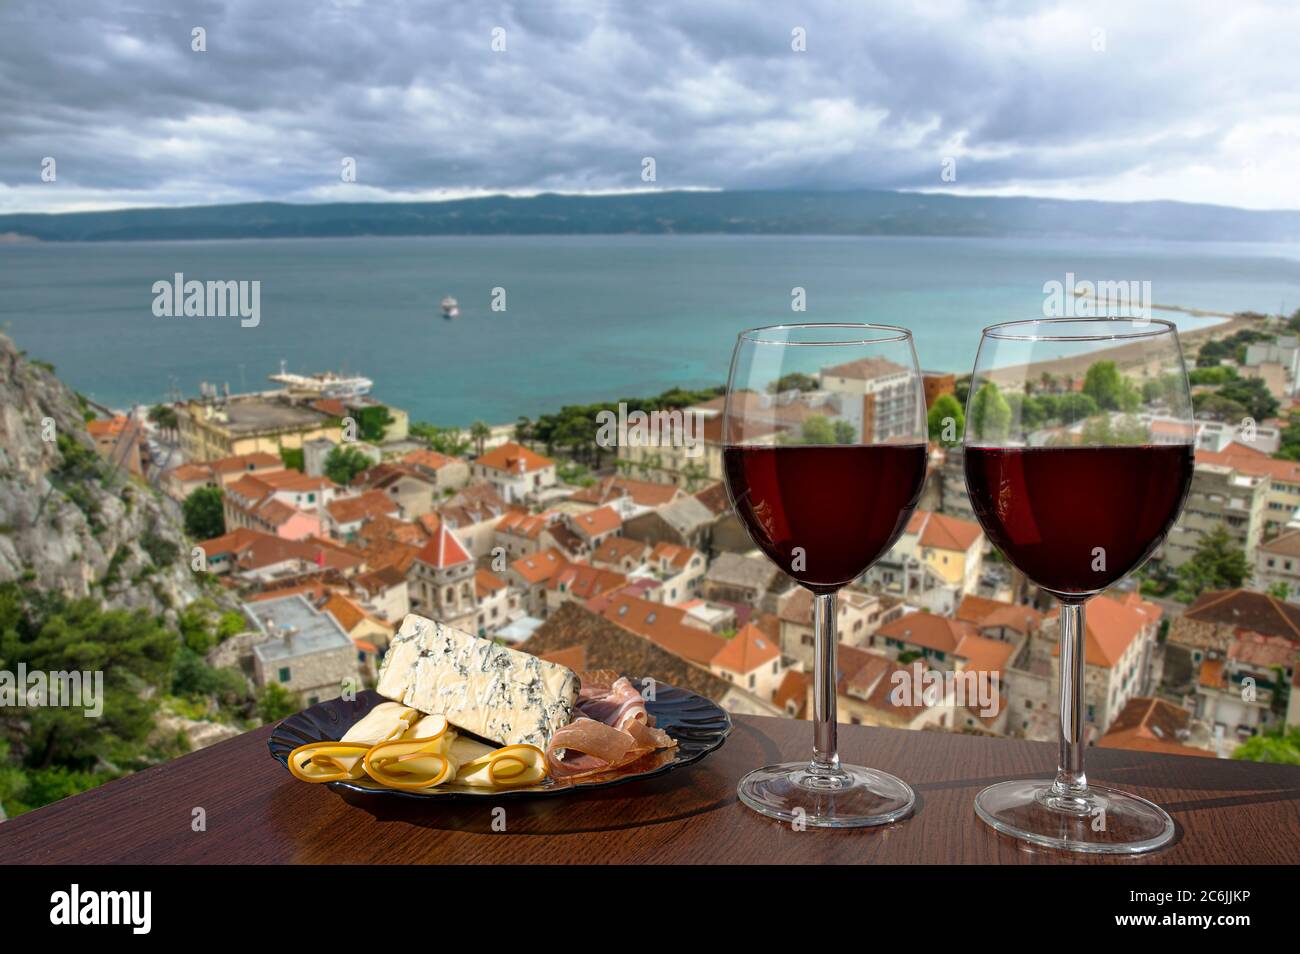 Deux verres de vin rouge avec assortiment de charcuterie avec vue sur la ville croate d'omis avec toits rouges et mer bleue. Verres de vin rouge avec en-cas Banque D'Images